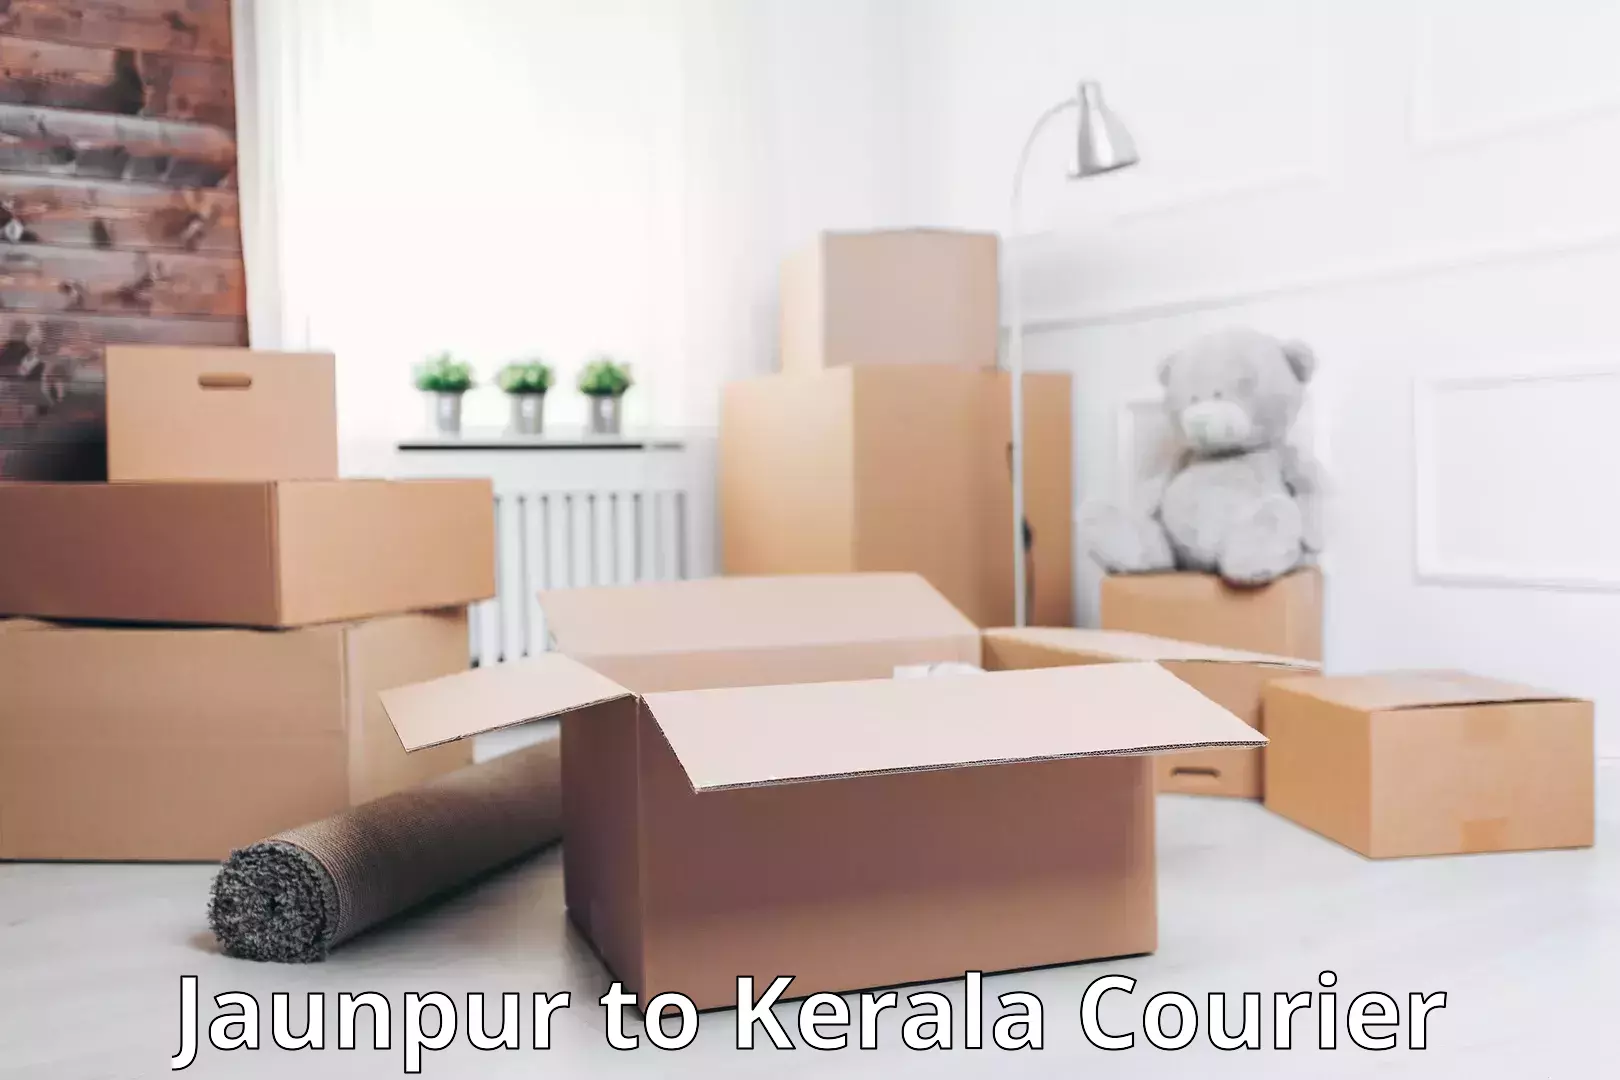 Baggage handling services Jaunpur to Kerala